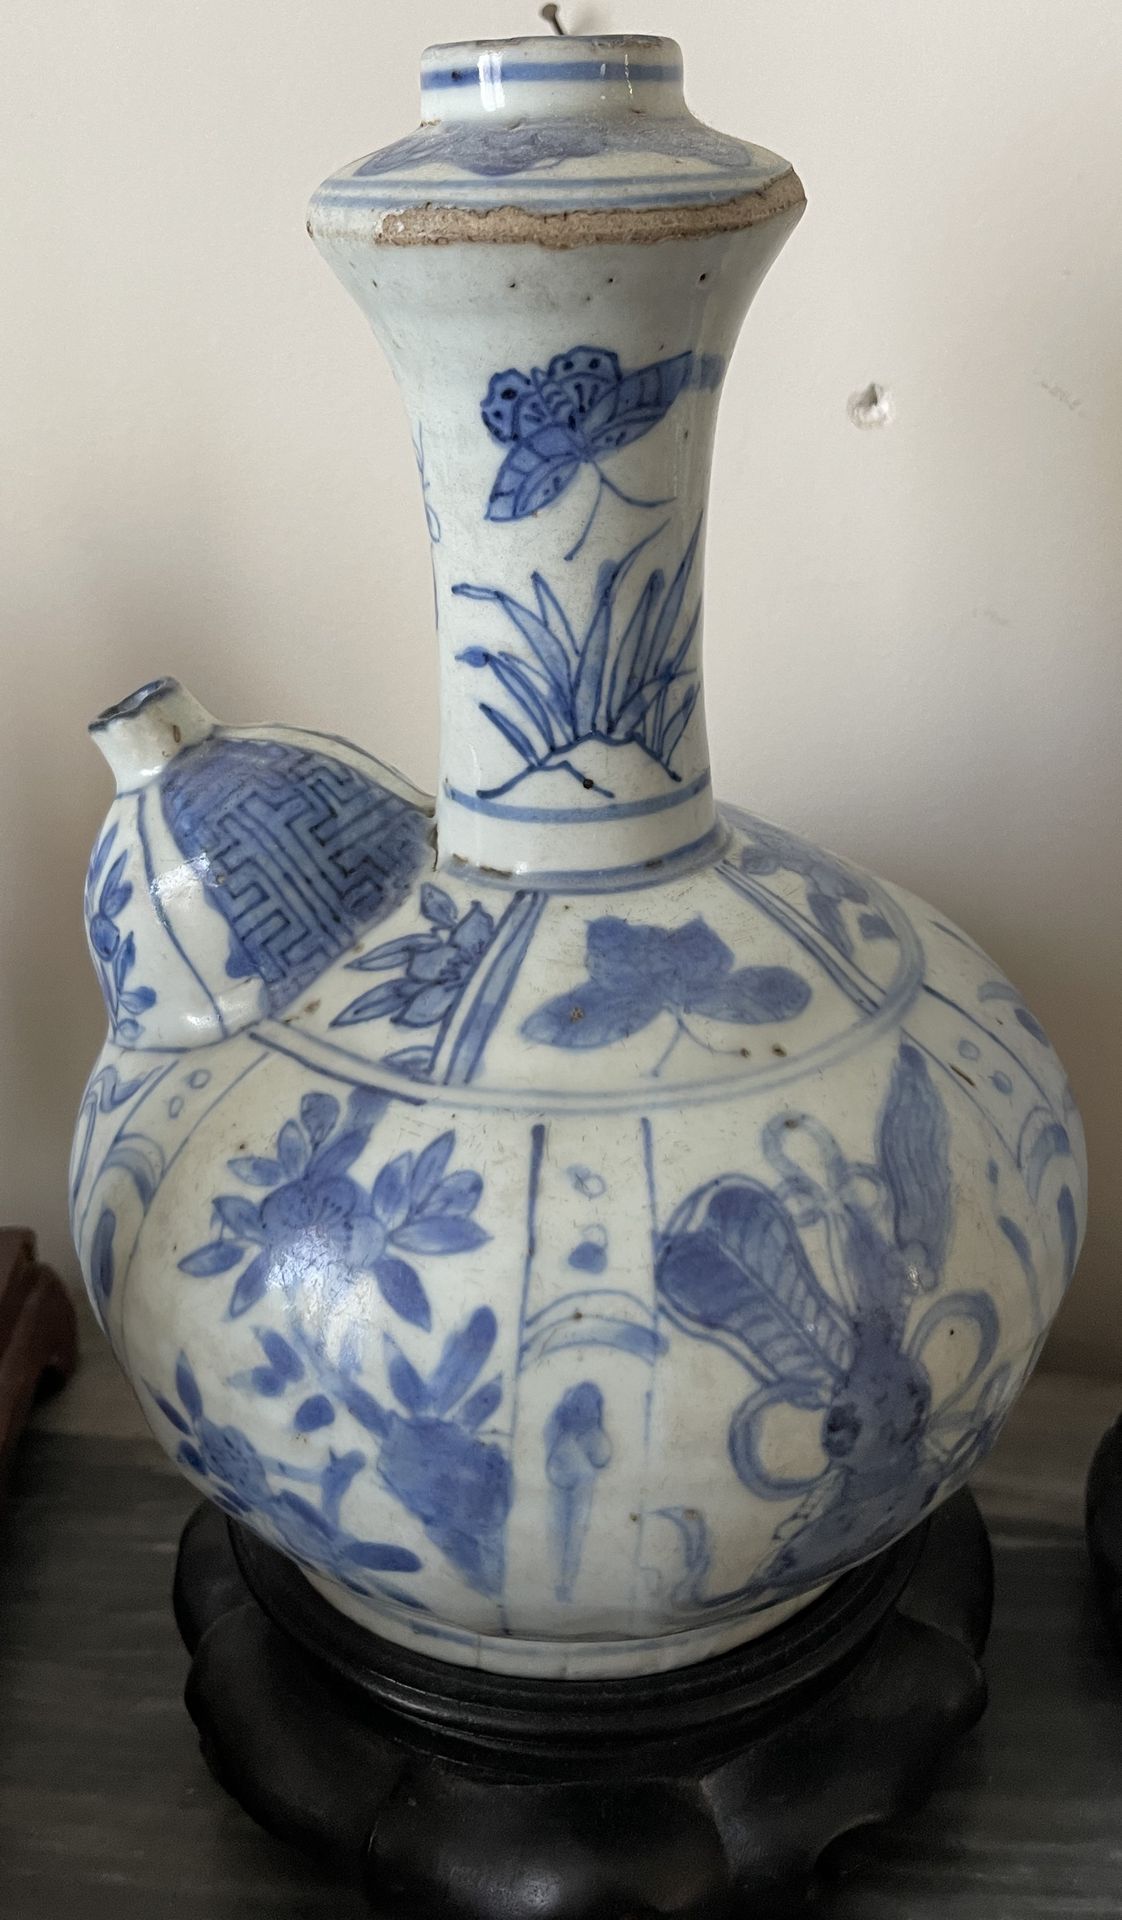 Null Chine XVIIe, époque Wanli (1573-1620)
Kendi en porcelain émaillée en bleu s&hellip;